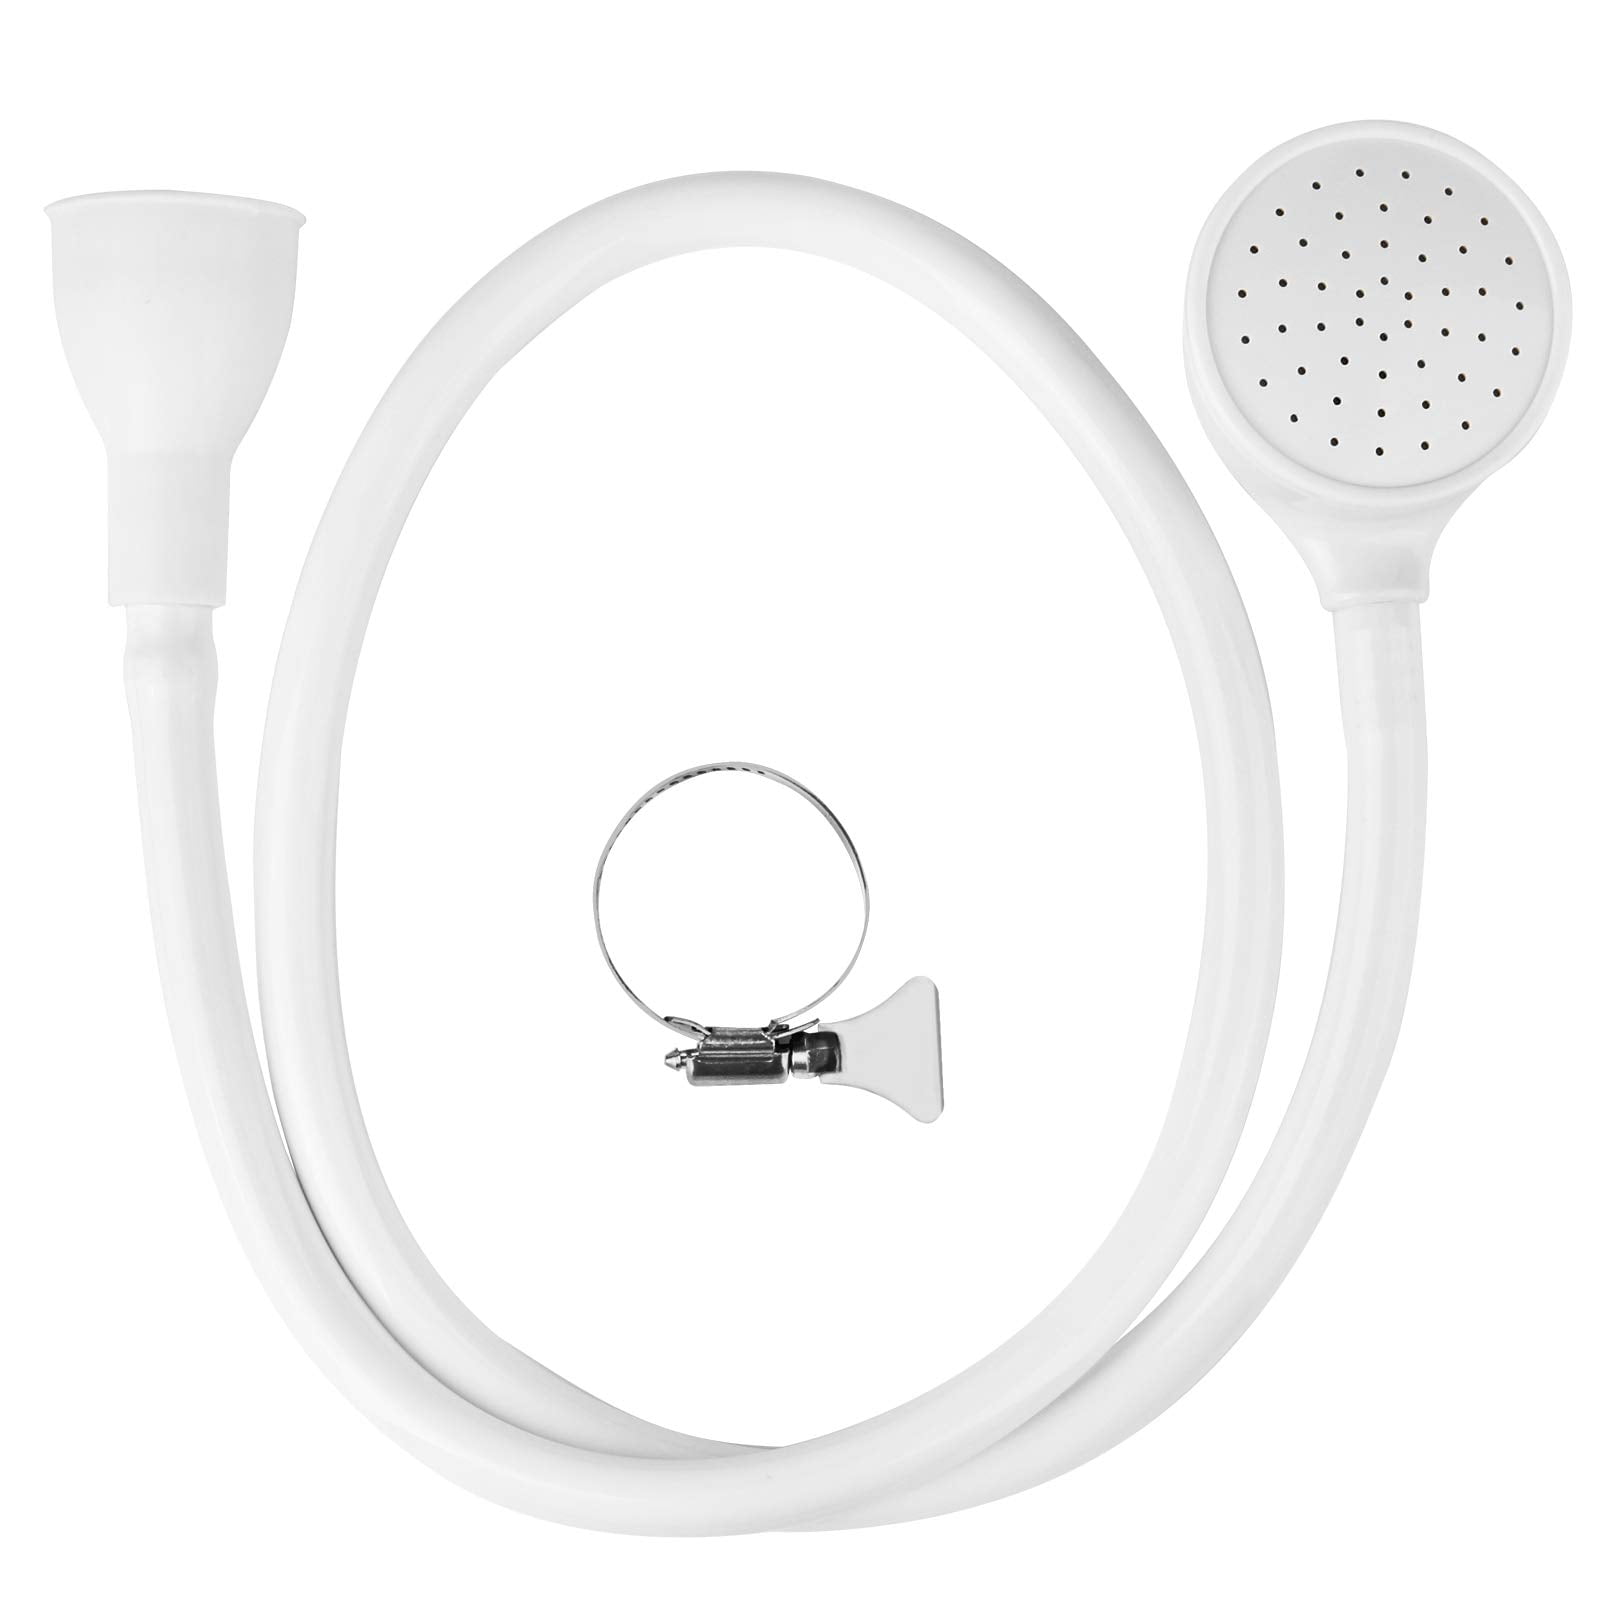 Dailiwei Pet Shower Attachment for Bathtub Faucet, Sink Faucet Sprayer Hose Attachment, Silver